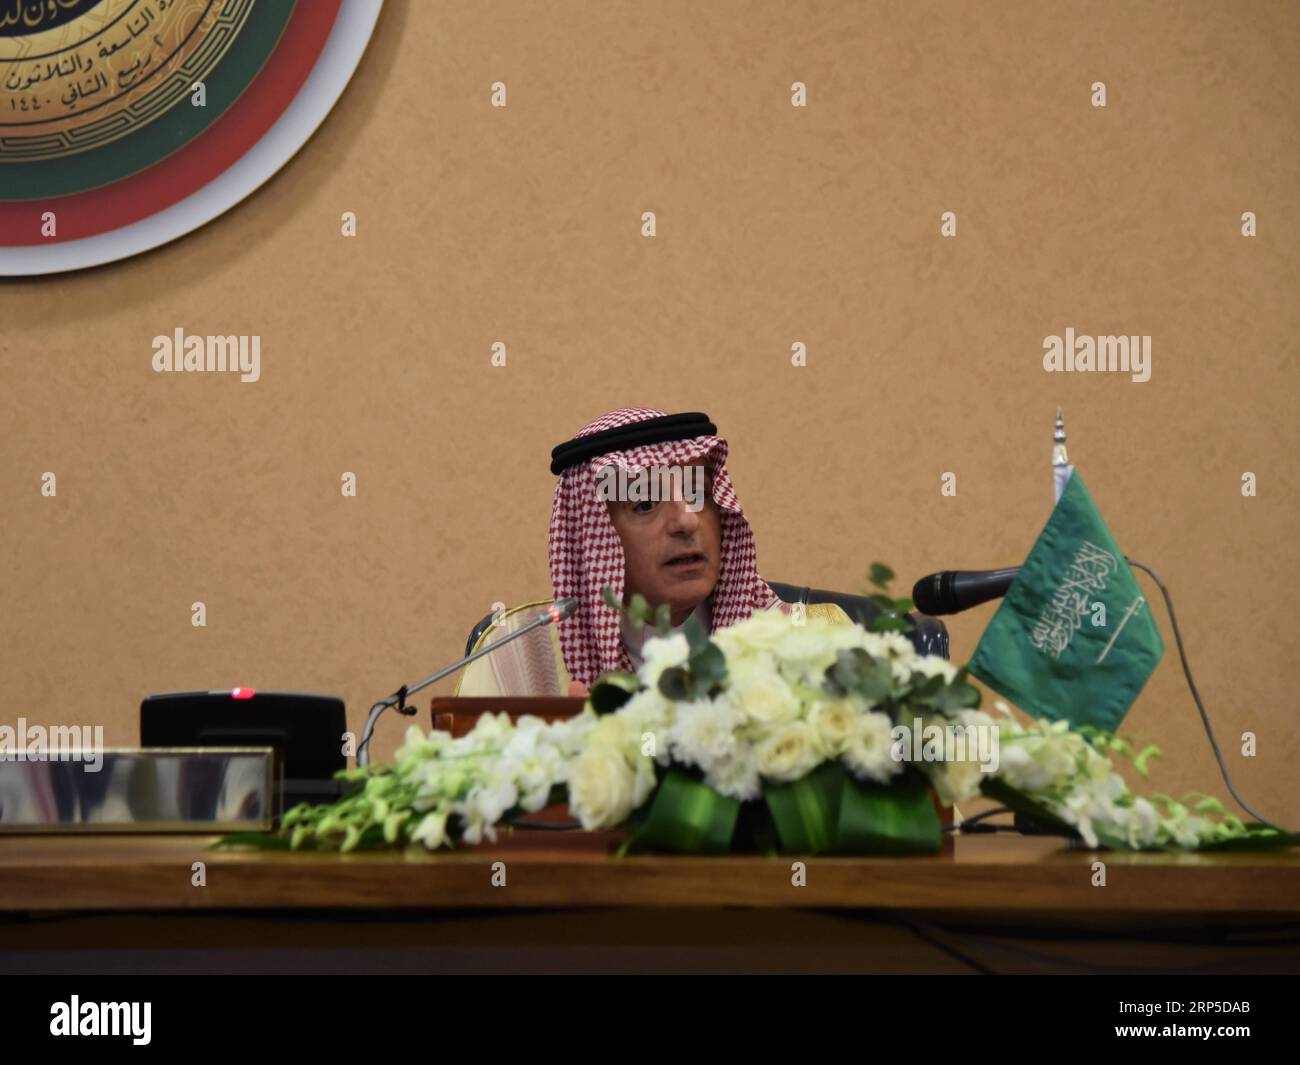 (181209) -- RIYADH, 9 dicembre 2018 -- il ministro degli Esteri saudita Adel al-Jubeir parla a una conferenza stampa a Riyadh, Arabia Saudita, il 9 dicembre 2018. Il ministro degli Esteri saudita Adel al-Jubeir ha affermato domenica che l'azione contro il Qatar mira a cambiare la sua politica, ha riferito al Arabiya TV. Al-Jubeir ha tenuto una conferenza stampa dopo la fine del 39° vertice del Consiglio di cooperazione del Golfo (CCG) a Riad. ) VERTICE ARABIA SAUDITA-RIYADH-GCC-CONFERENZA STAMPA TUXYIFAN PUBLICATIONXNOTXINXCHN Foto Stock